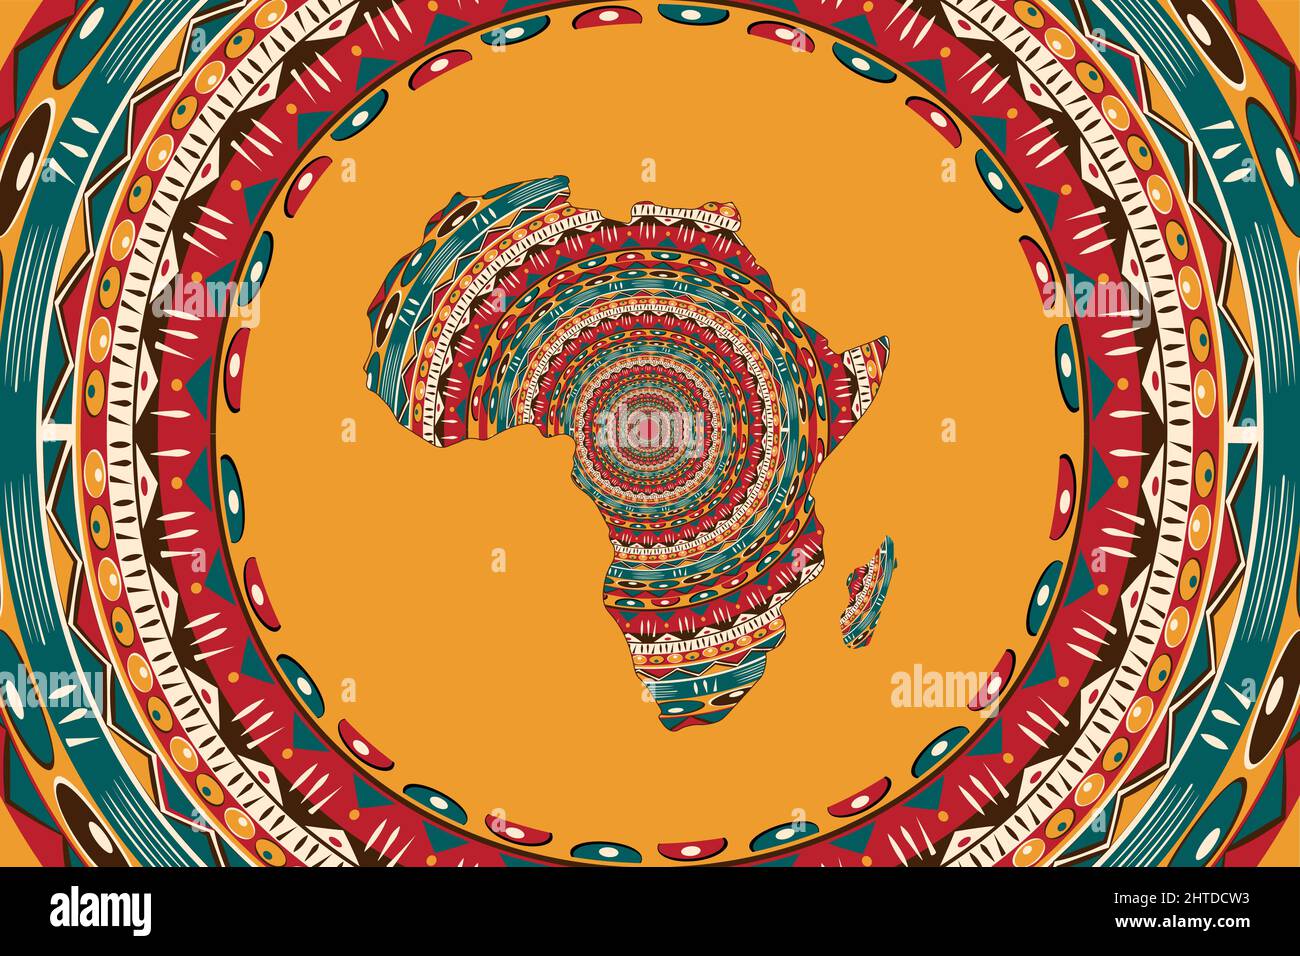 Africa mappa modellata e frame motivi etnici. Banner con tradizionale grunge tribale motivo africano, elementi, concept design. Vettore isolato arancione Illustrazione Vettoriale